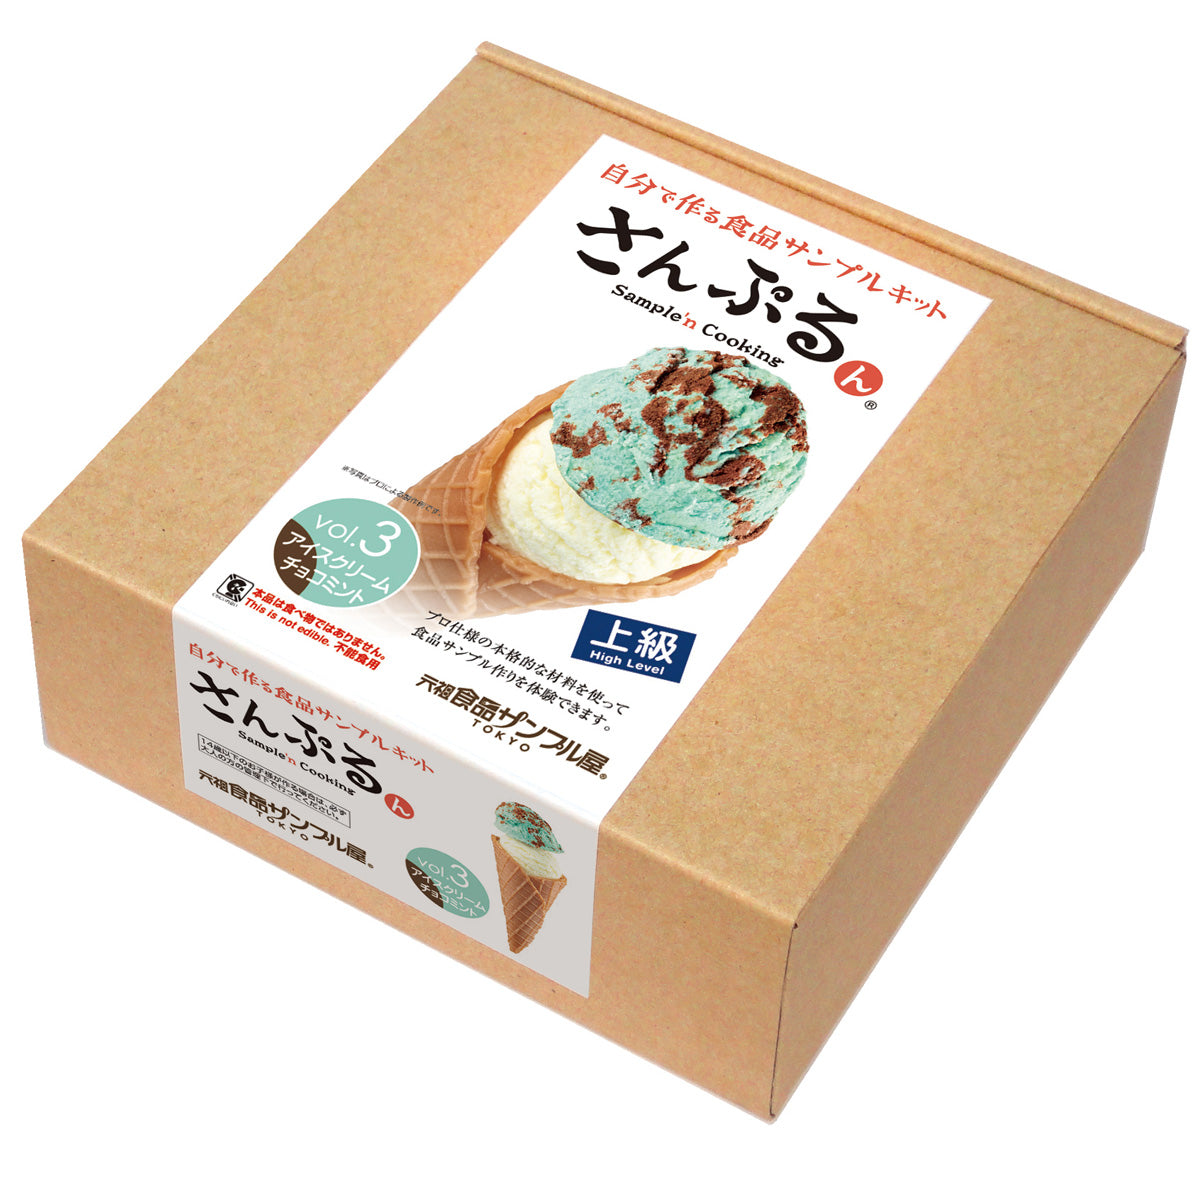 自分でつくる食品サンプル製作キット「さんぷるん アイスクリームvol.3 チョコミント」のパッケージ画像です。